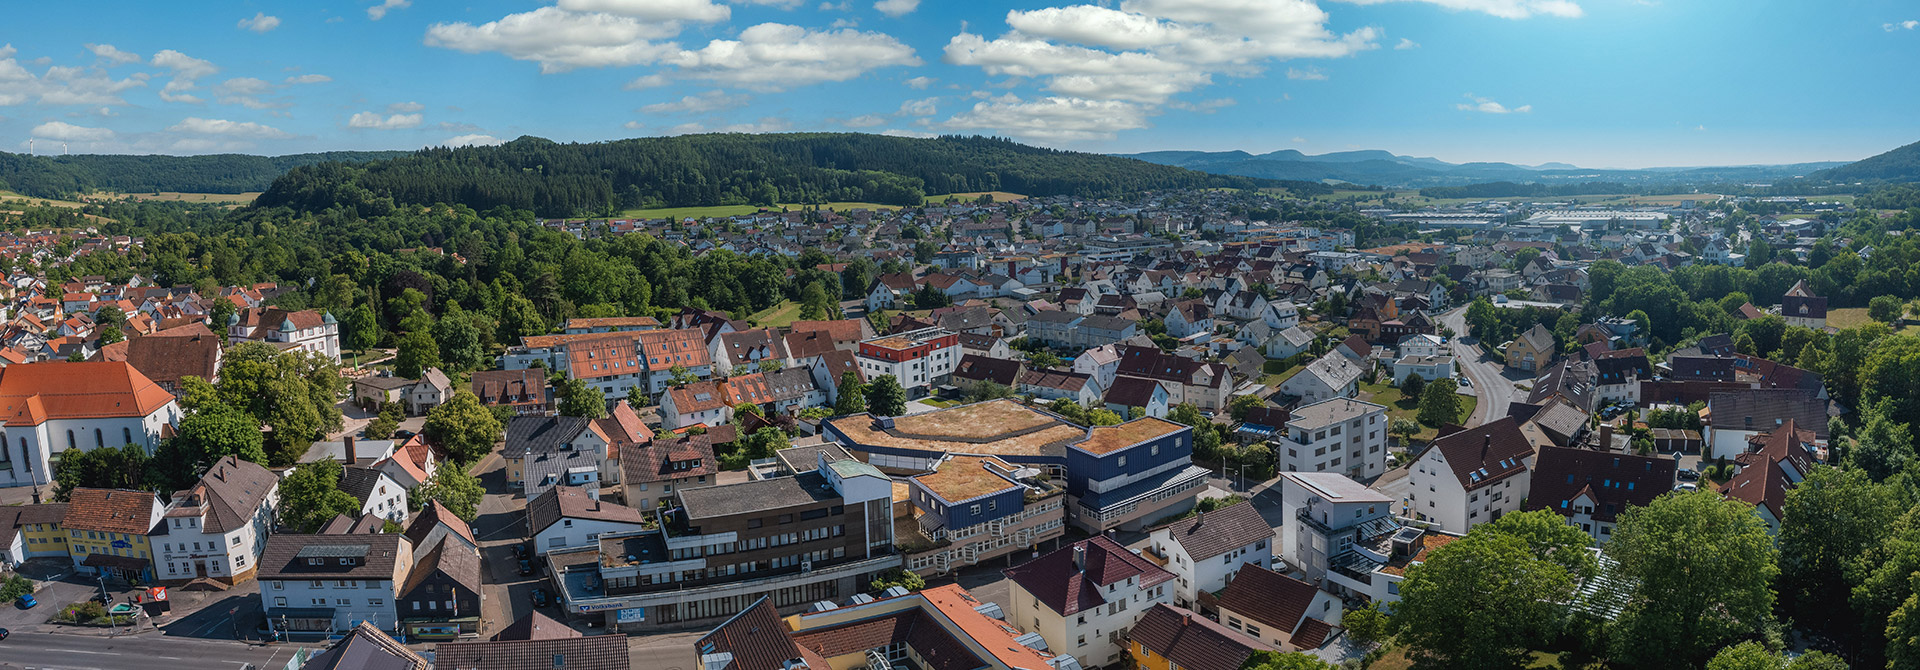 Luftbild von Donzdorf